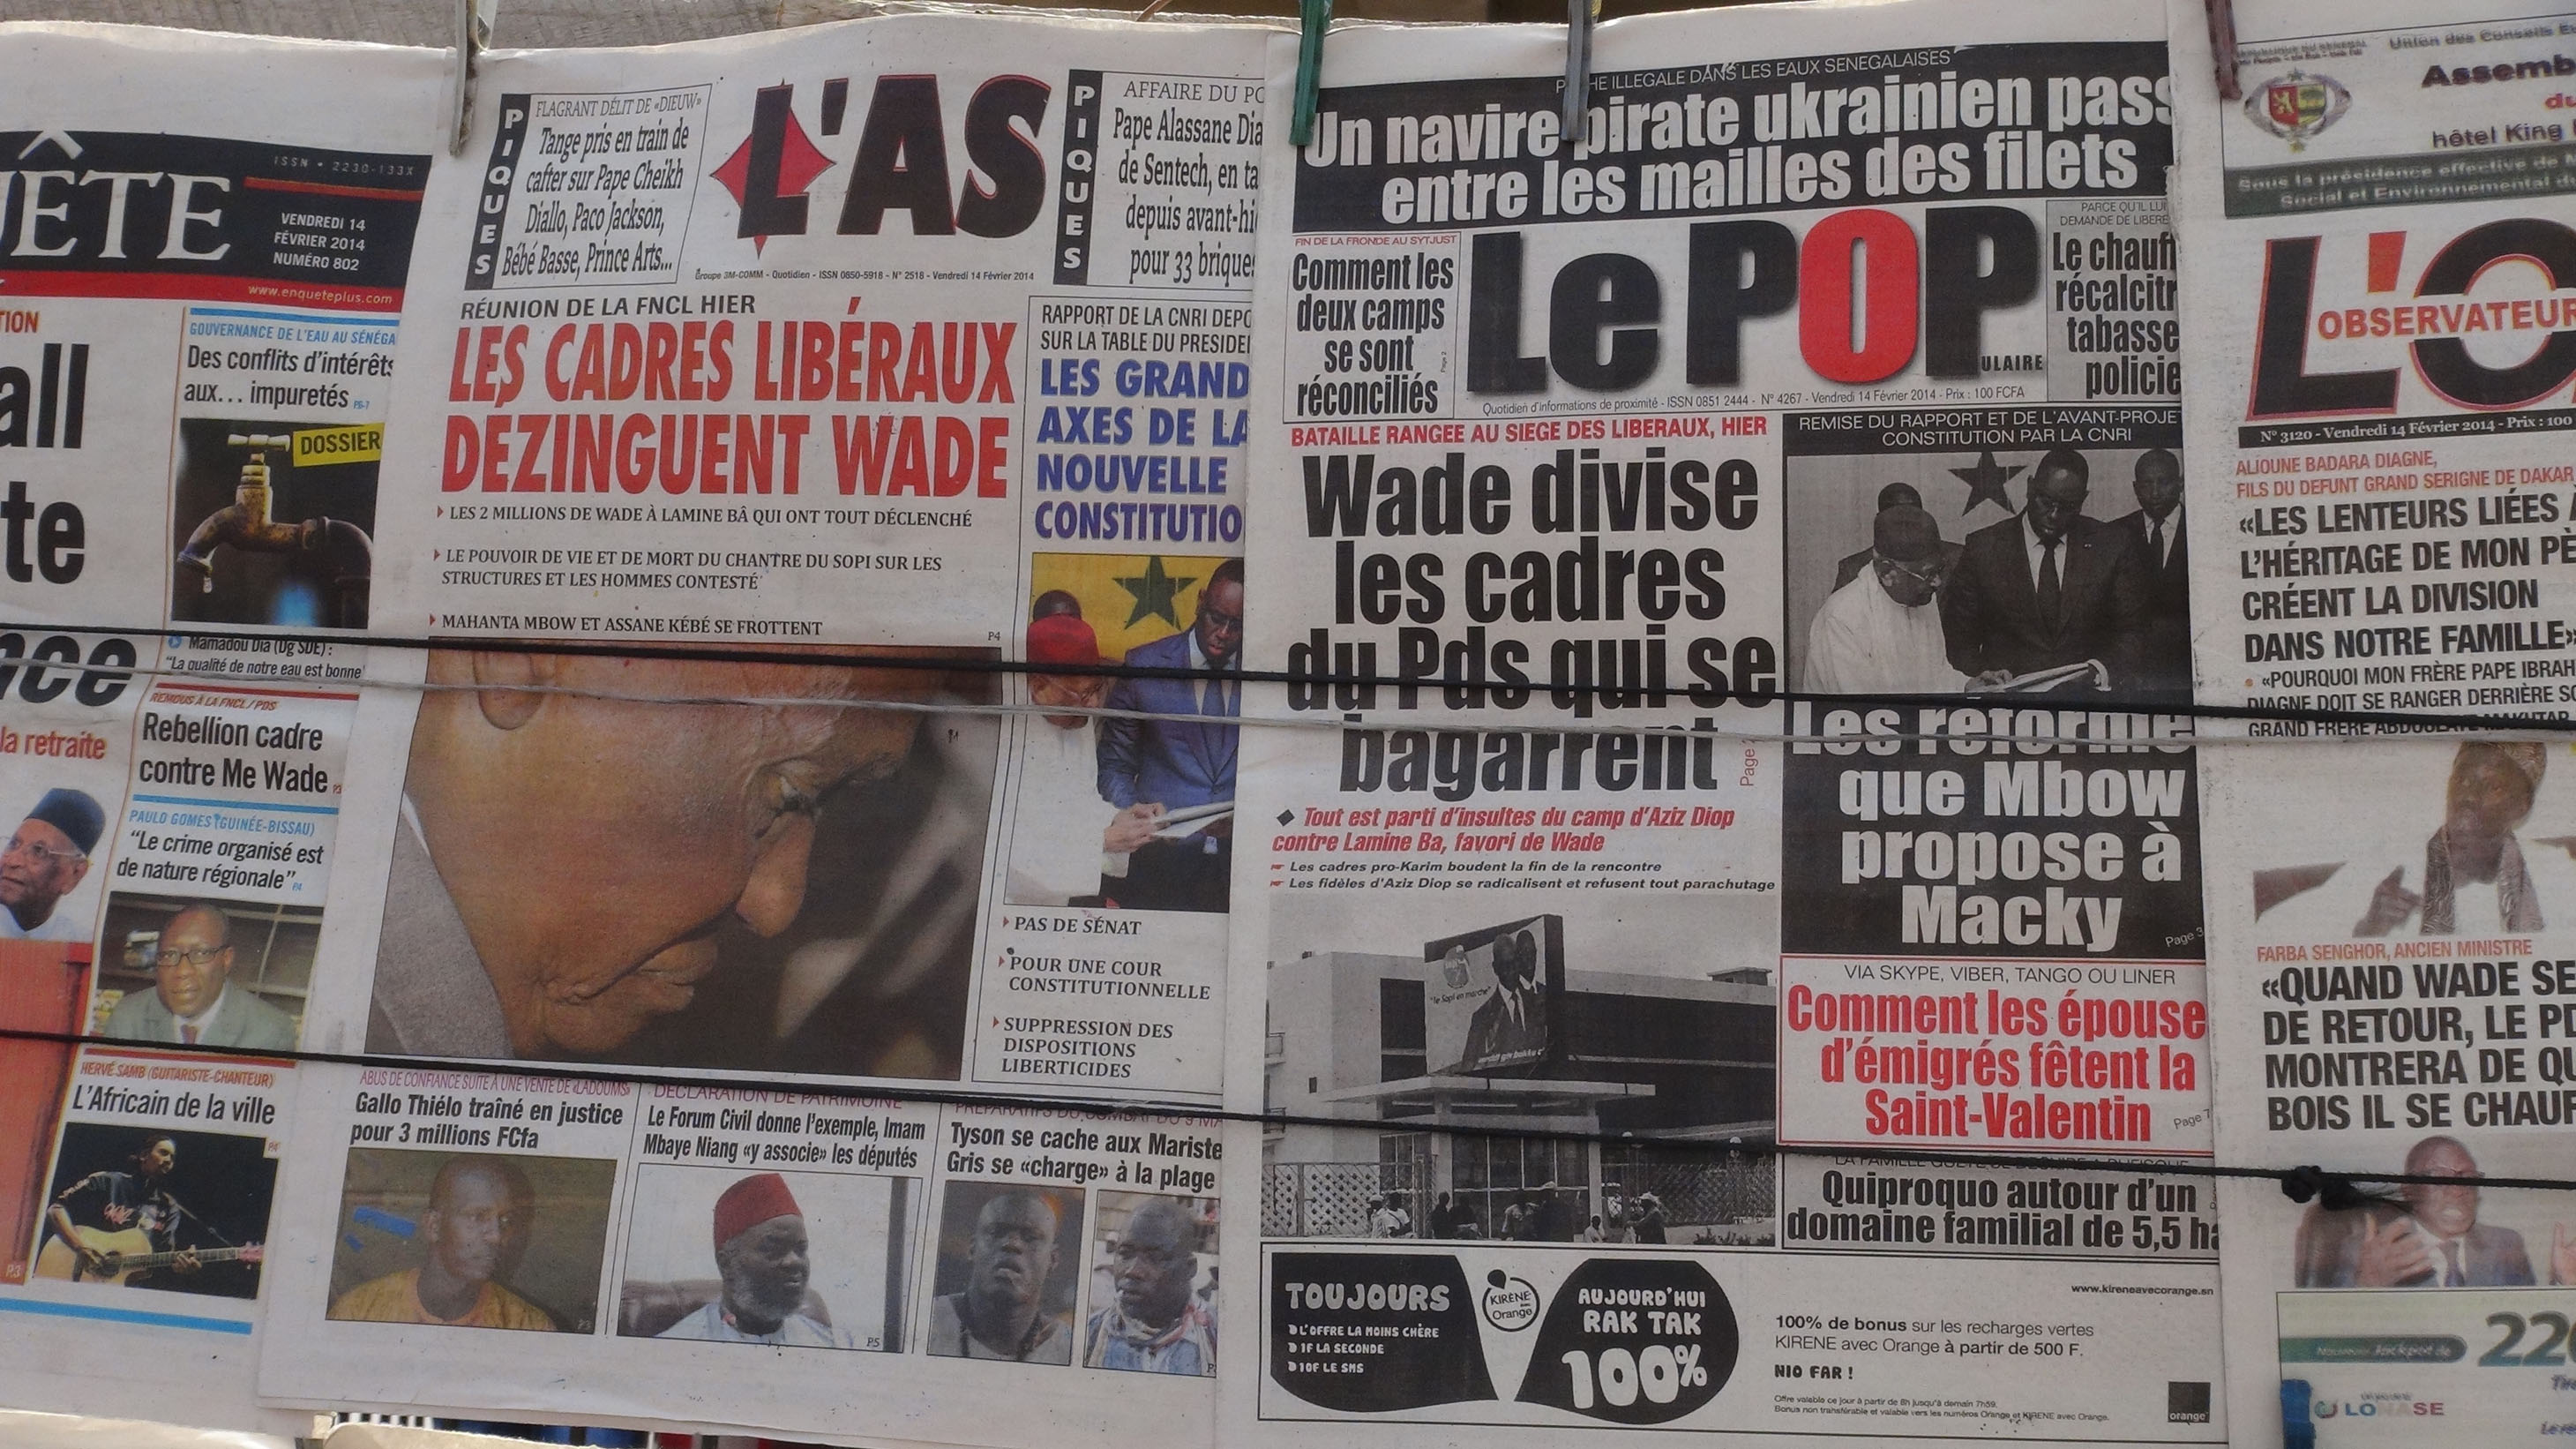 Presse revue: Le débat sur la libération annoncée de Karim Wade et d'autres sujets au menu des quotidiens